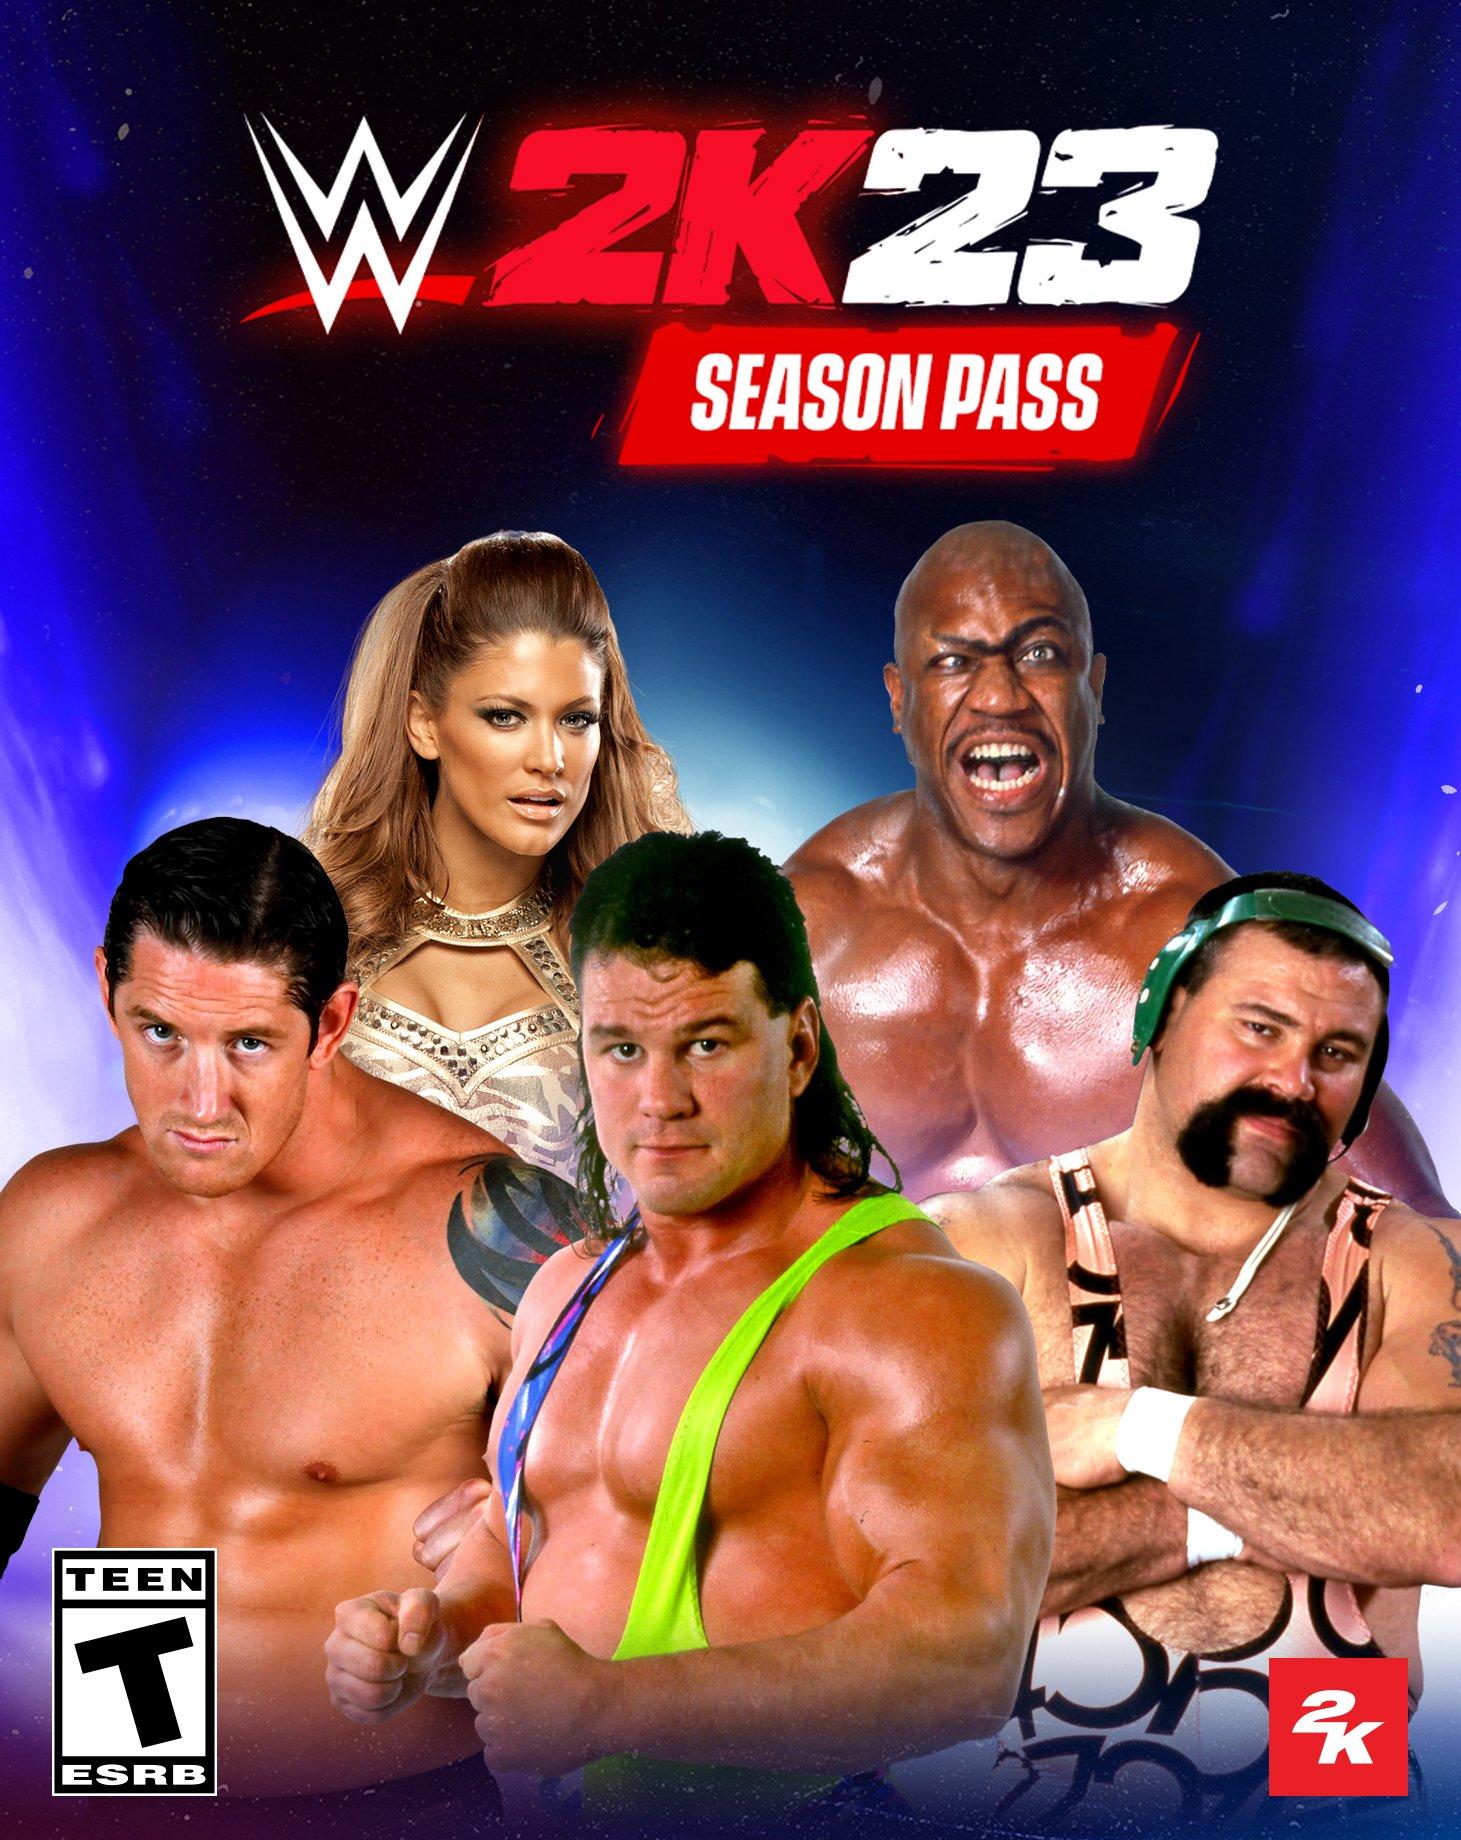 Comprar WWE 2K23 Steam